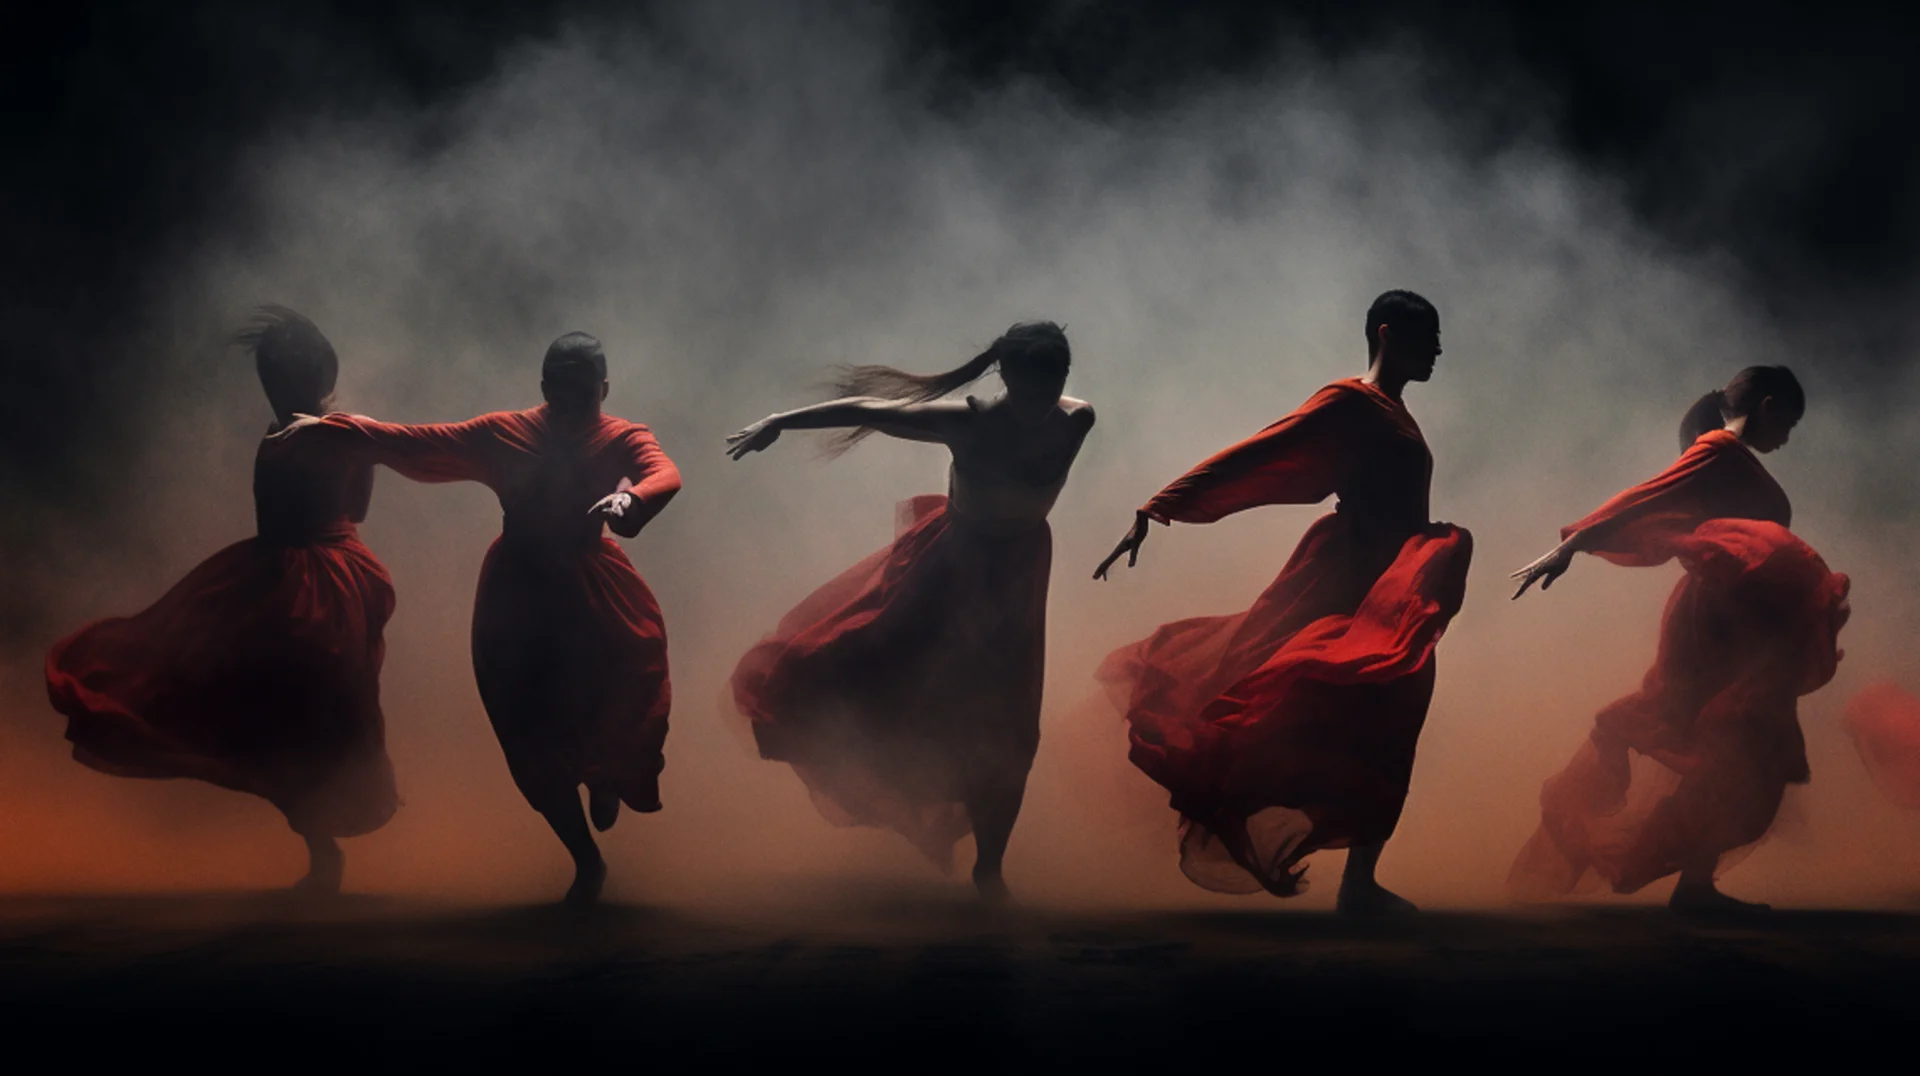 Tanssijoita punaisissa asuissaan juoksevat lavalla, ilmassa savua.